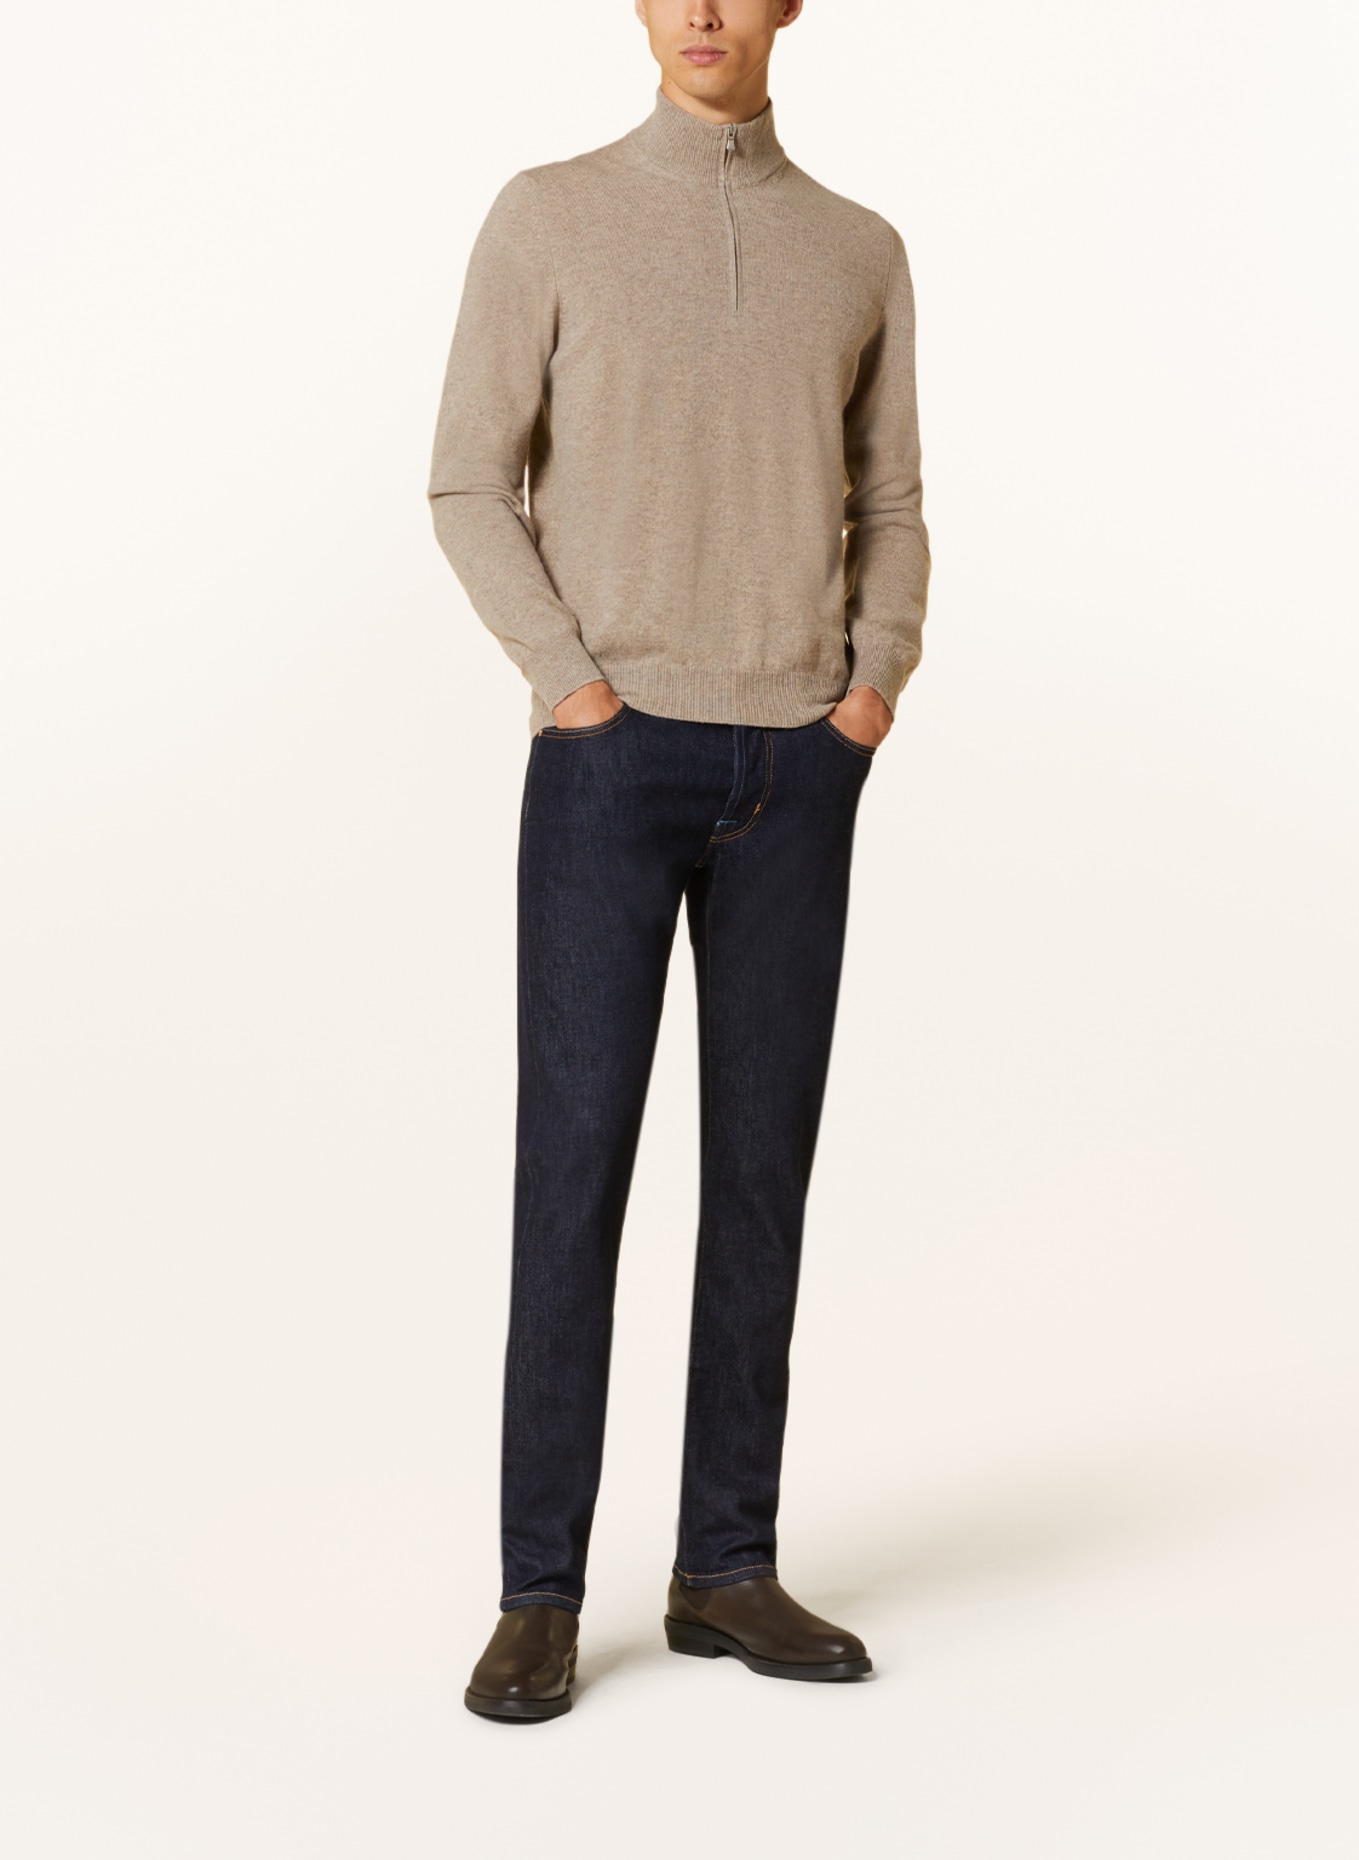 GRAN SASSO Half-zip sweater, Color: BEIGE (Image 2)